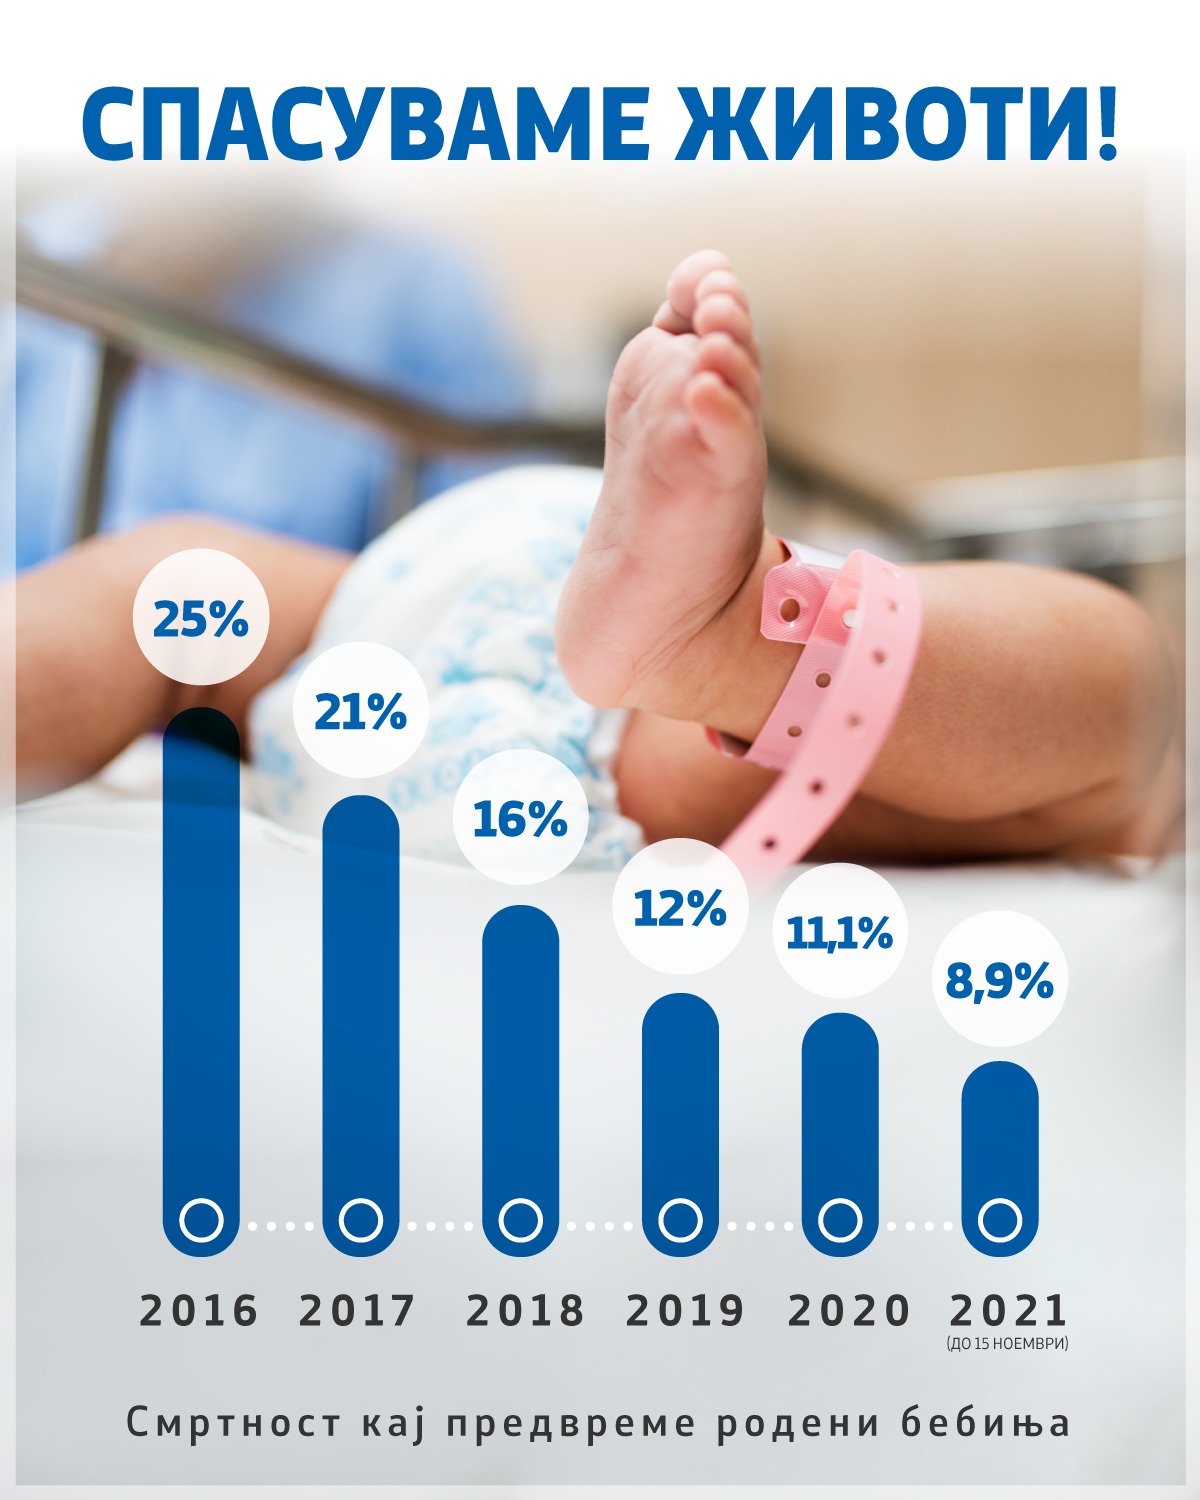 Филипче: Намалена смртноста на предвреме родените бебиња од 26% на 8%